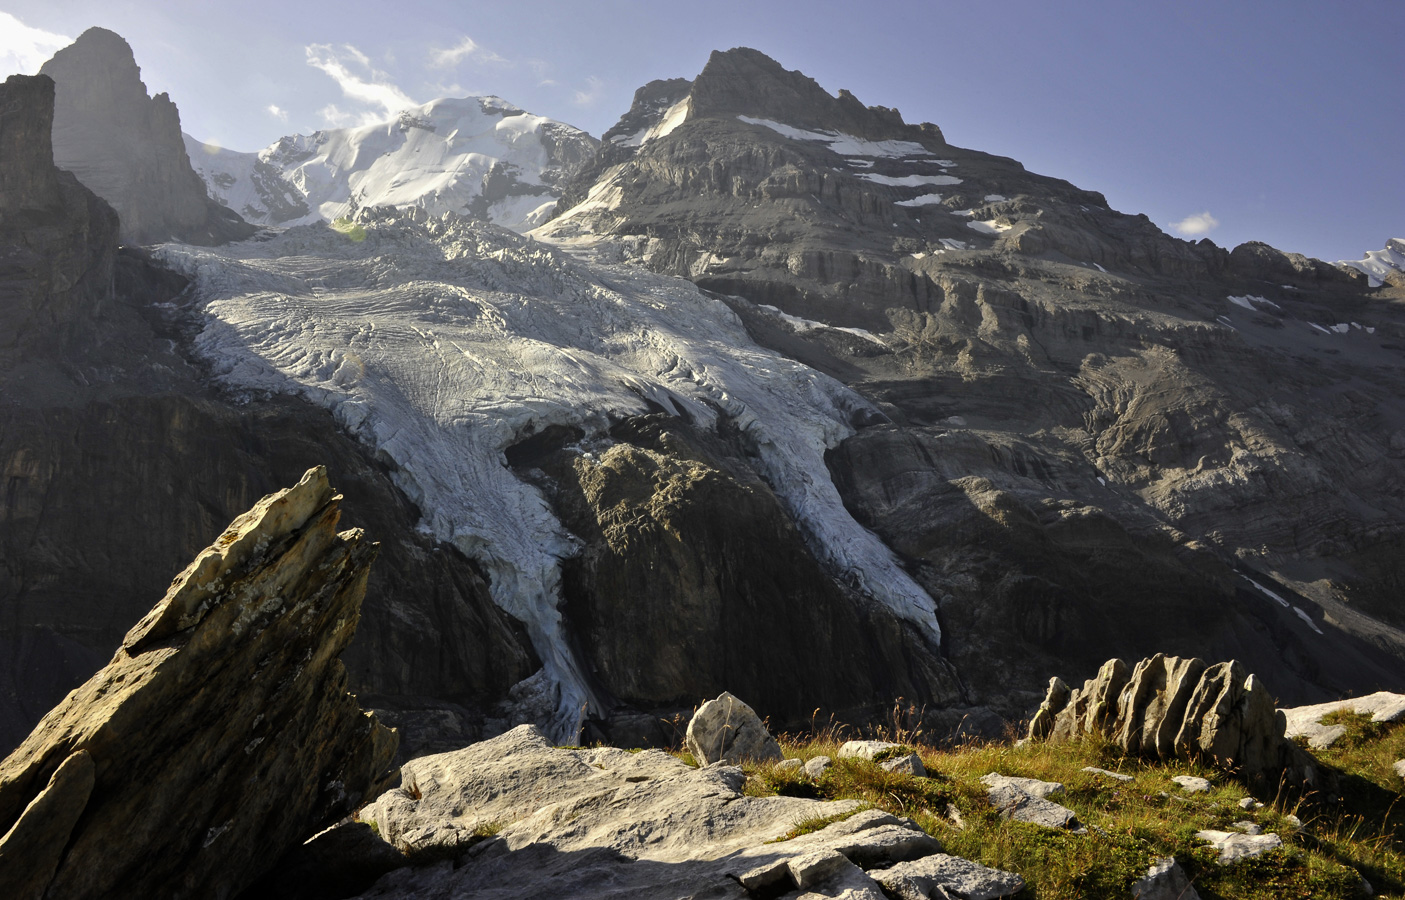 Der Gletscher "fliesst" über die Kante am Berg, ein fossiler Dino rechts? 